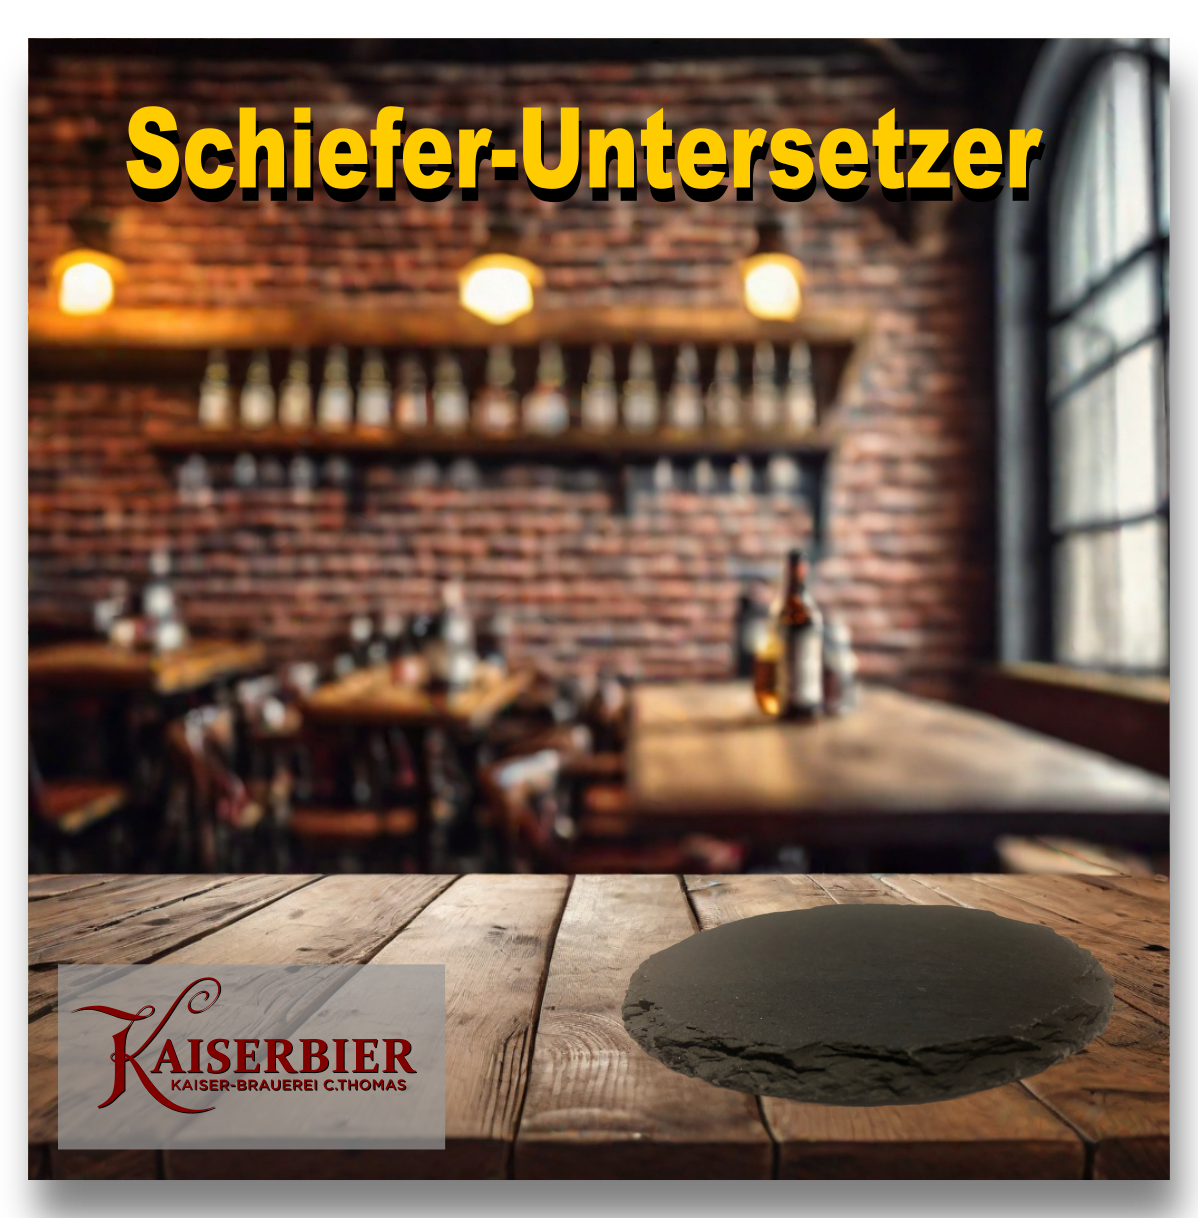 KAISERBIER - Schieferstein-Untersetzer